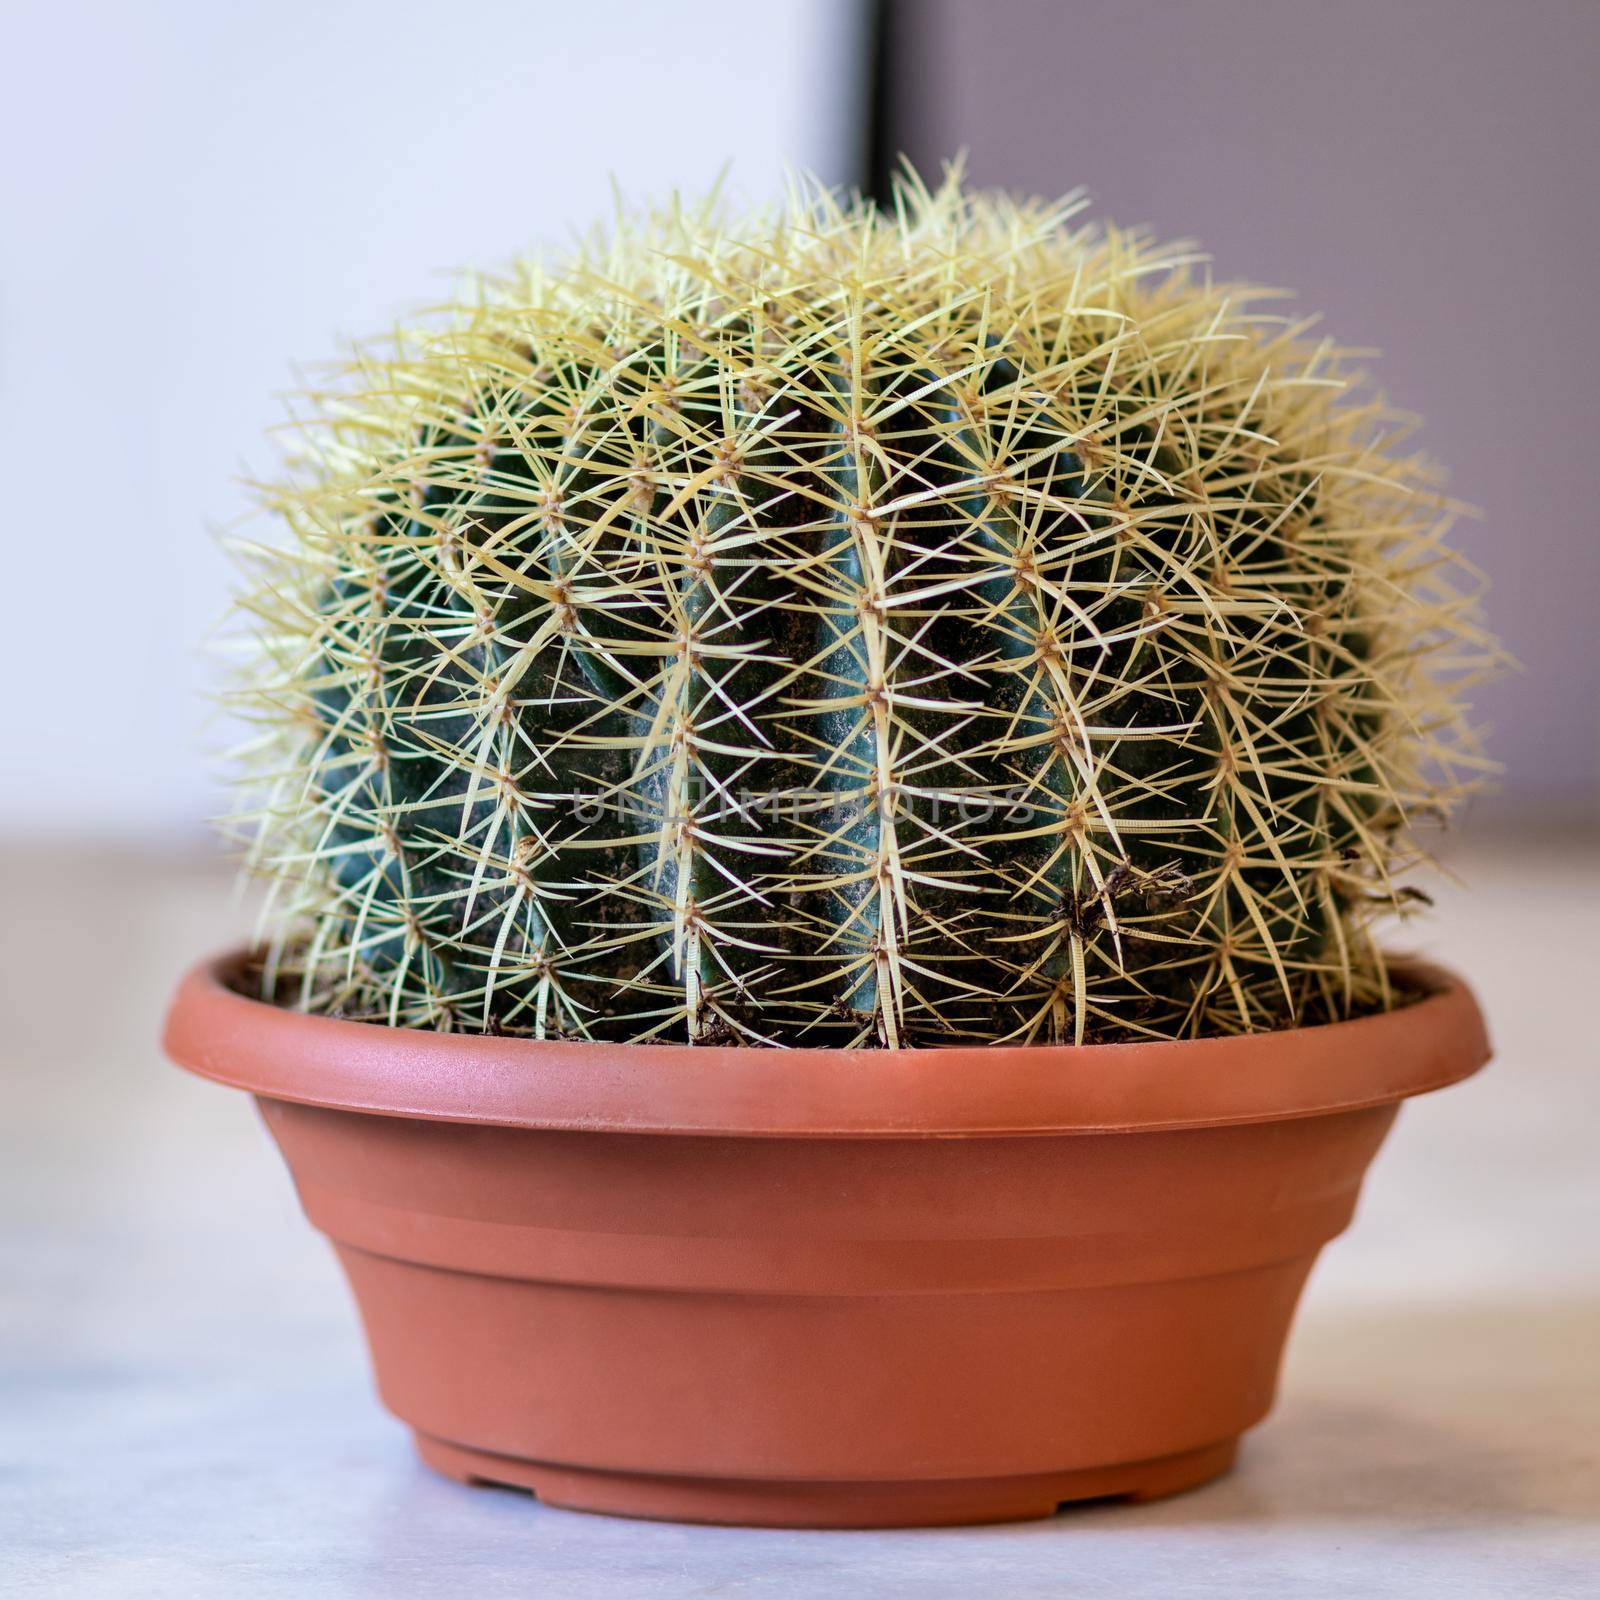 Echinocactus is a genus of cacti in the subfamily Cactoideae cactus